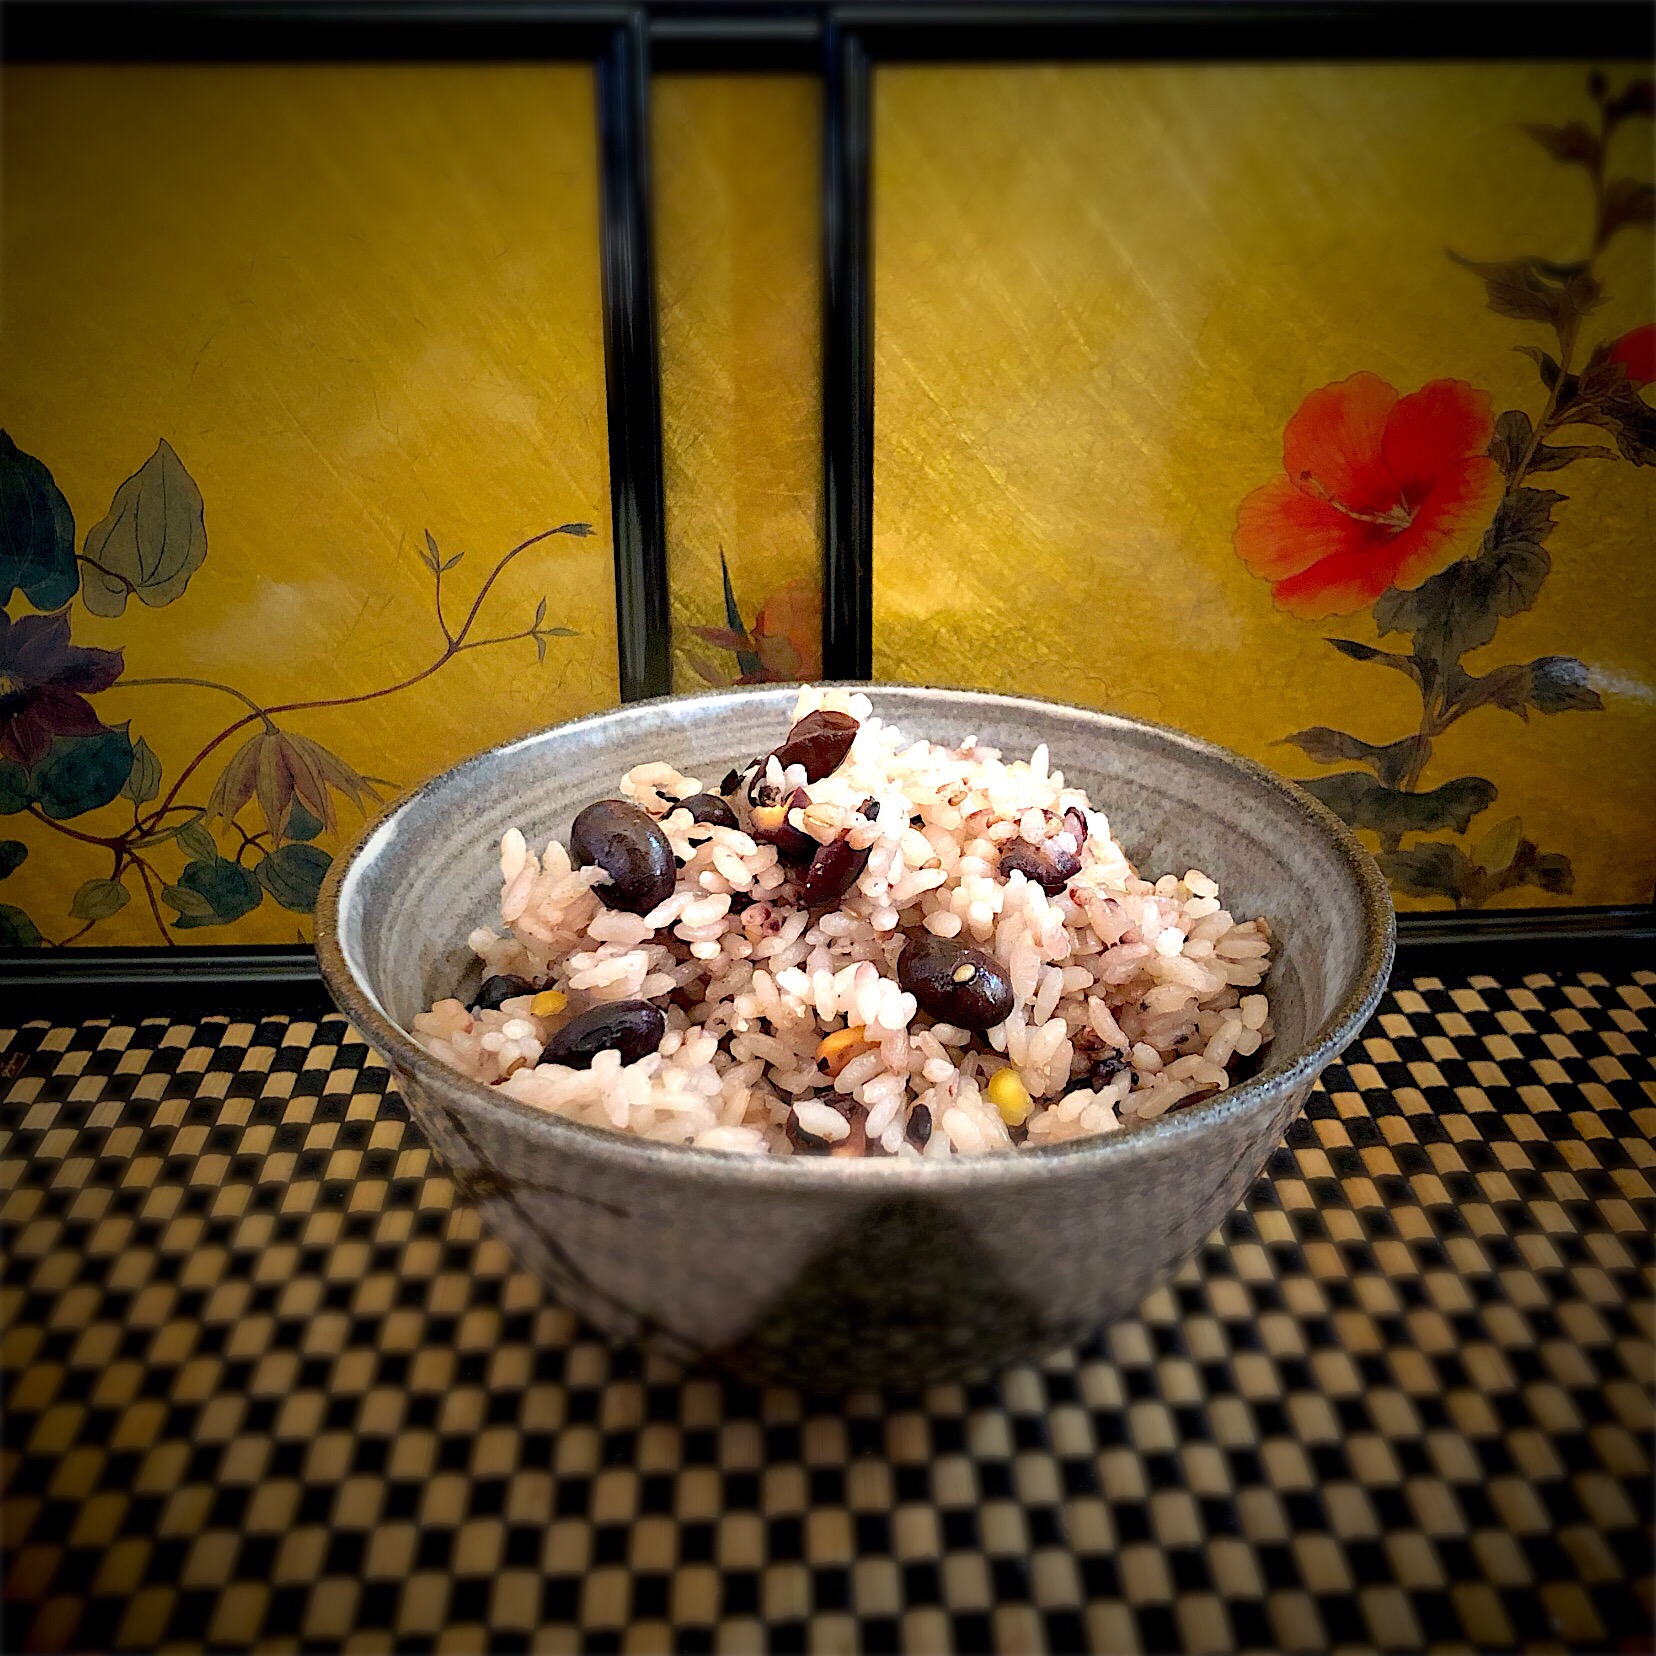 佐野未起の料理 人生初の黒豆を使い雑穀米との炊き合わせキーは醤油